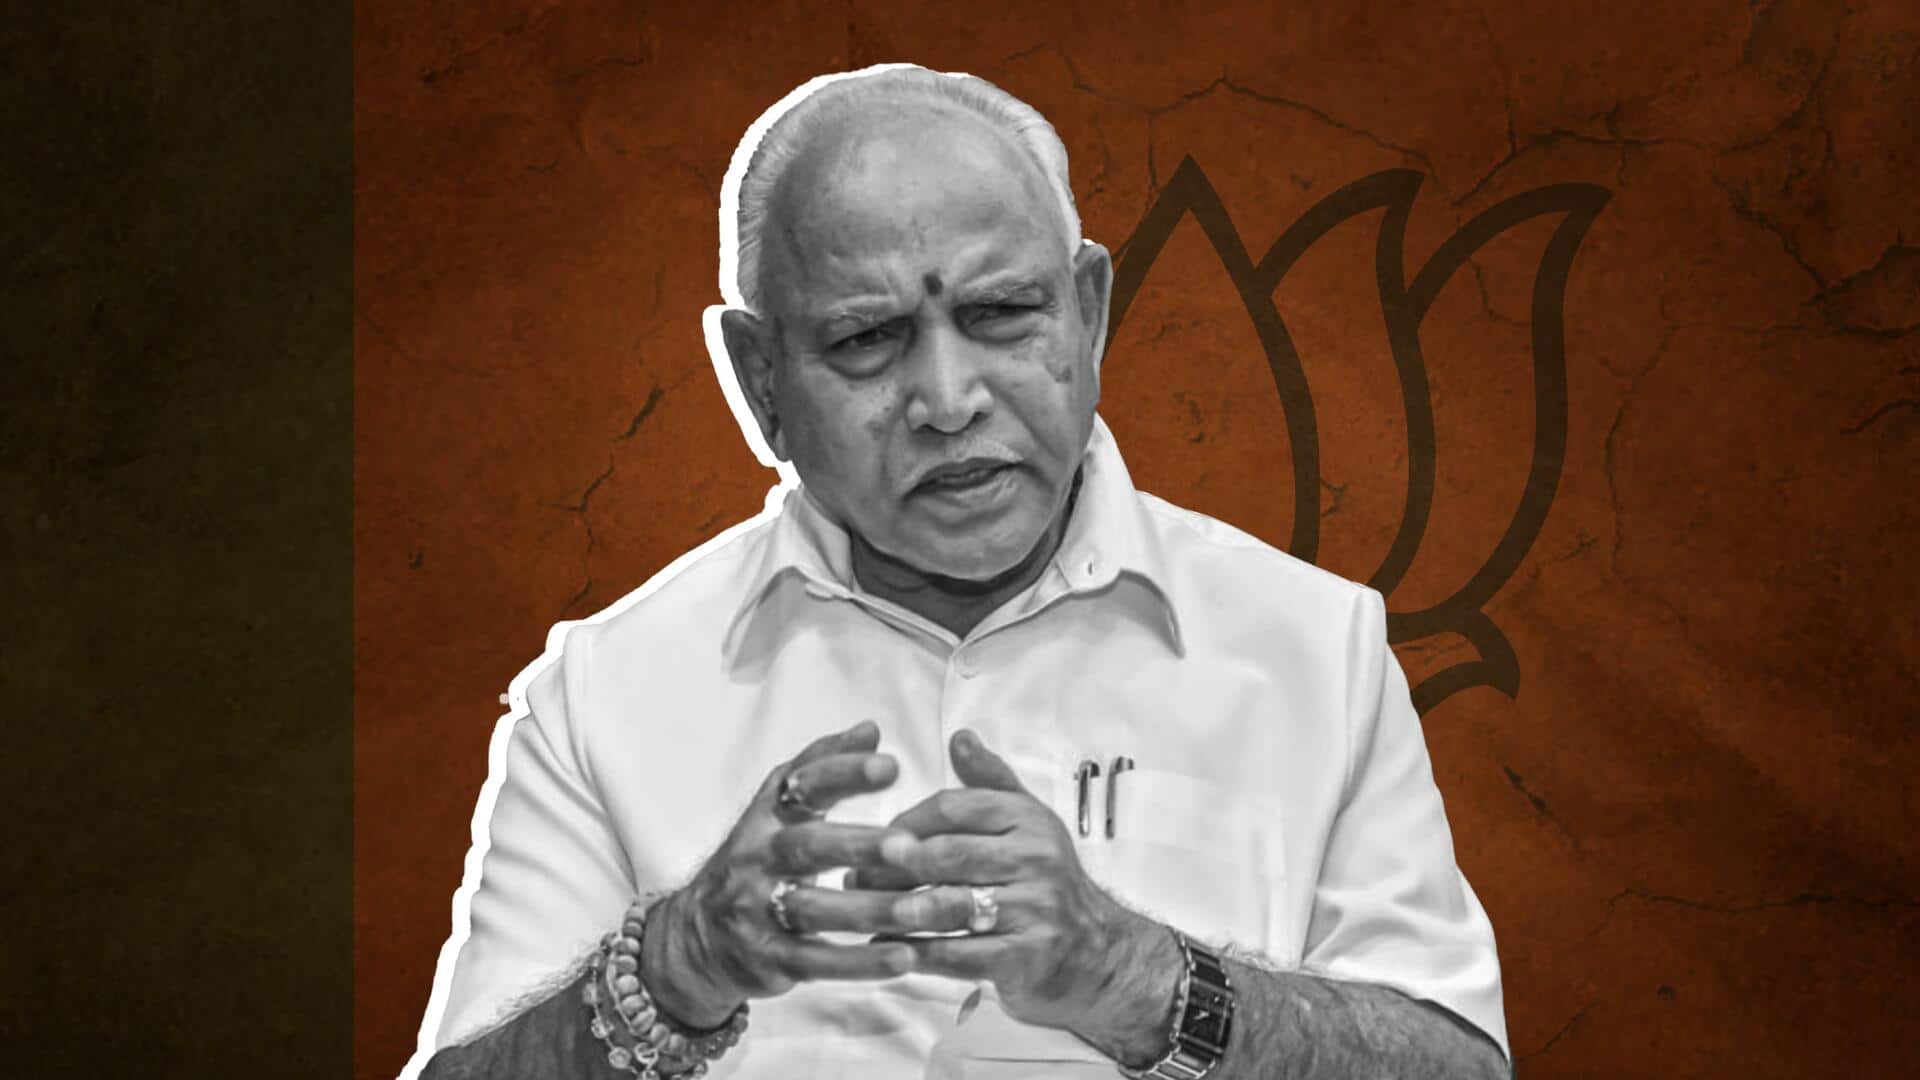 कर्नाटक: बीएस येदियुरप्पा बोले- चुनावी राजनीति छोड़ना मेरा फैसला था, दोबारा नहीं लौटूंगा